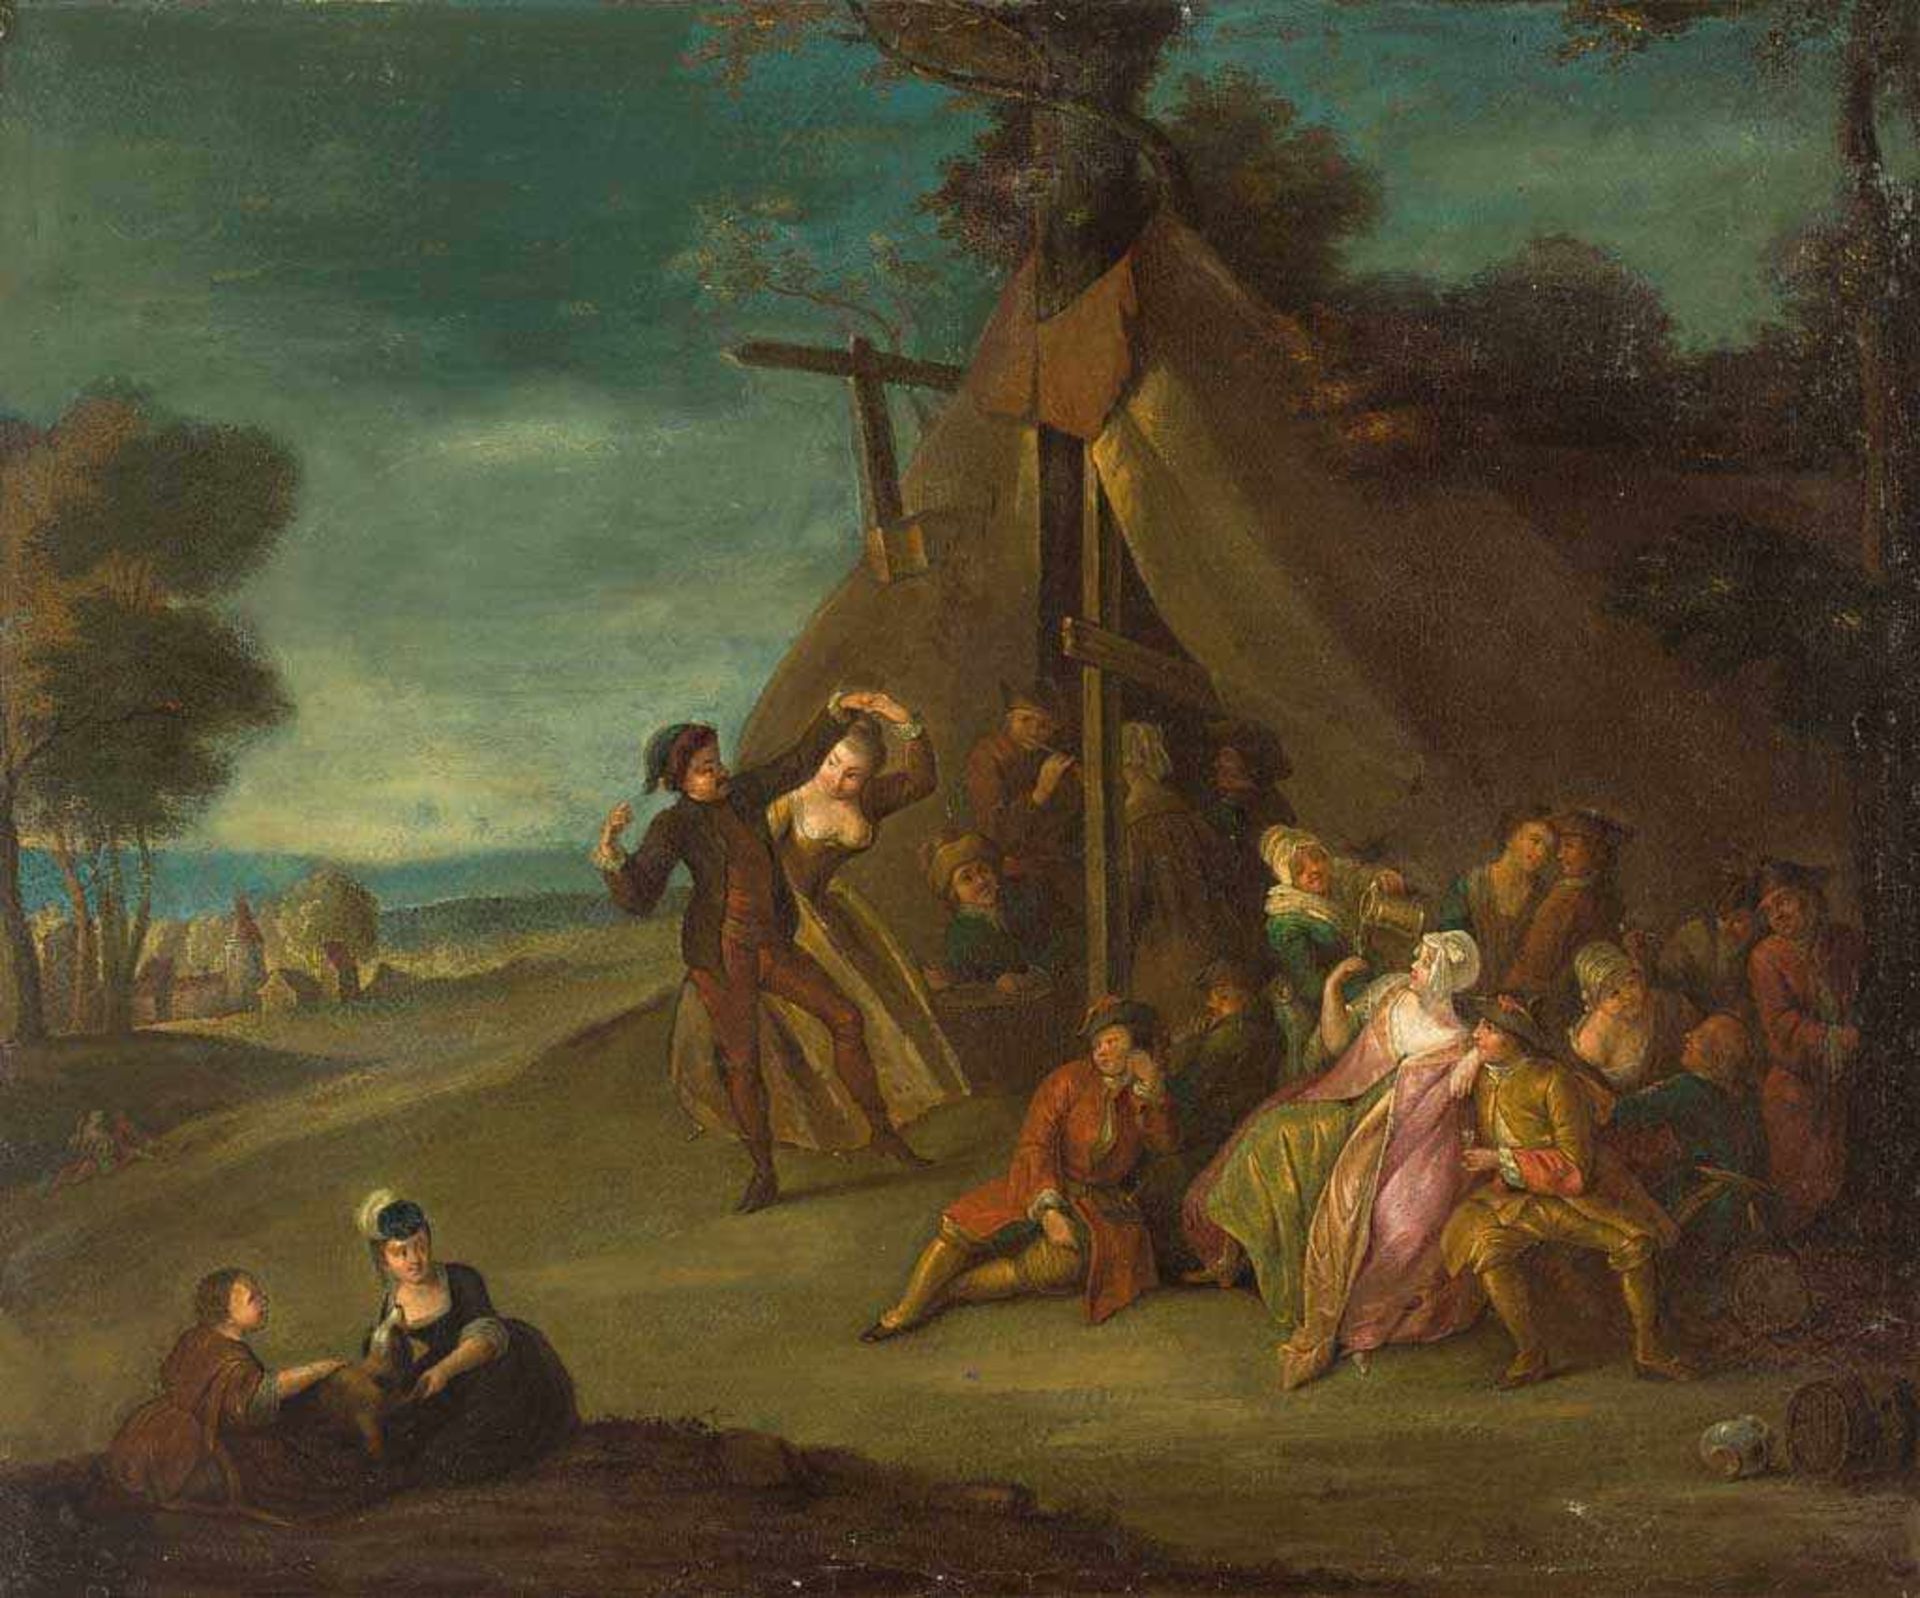 Maler des 18./19. Jh. im Stil von Watteau. Festende Gesellschaft vor einem Zelt. Öl/Lwd. 54 x 64,5